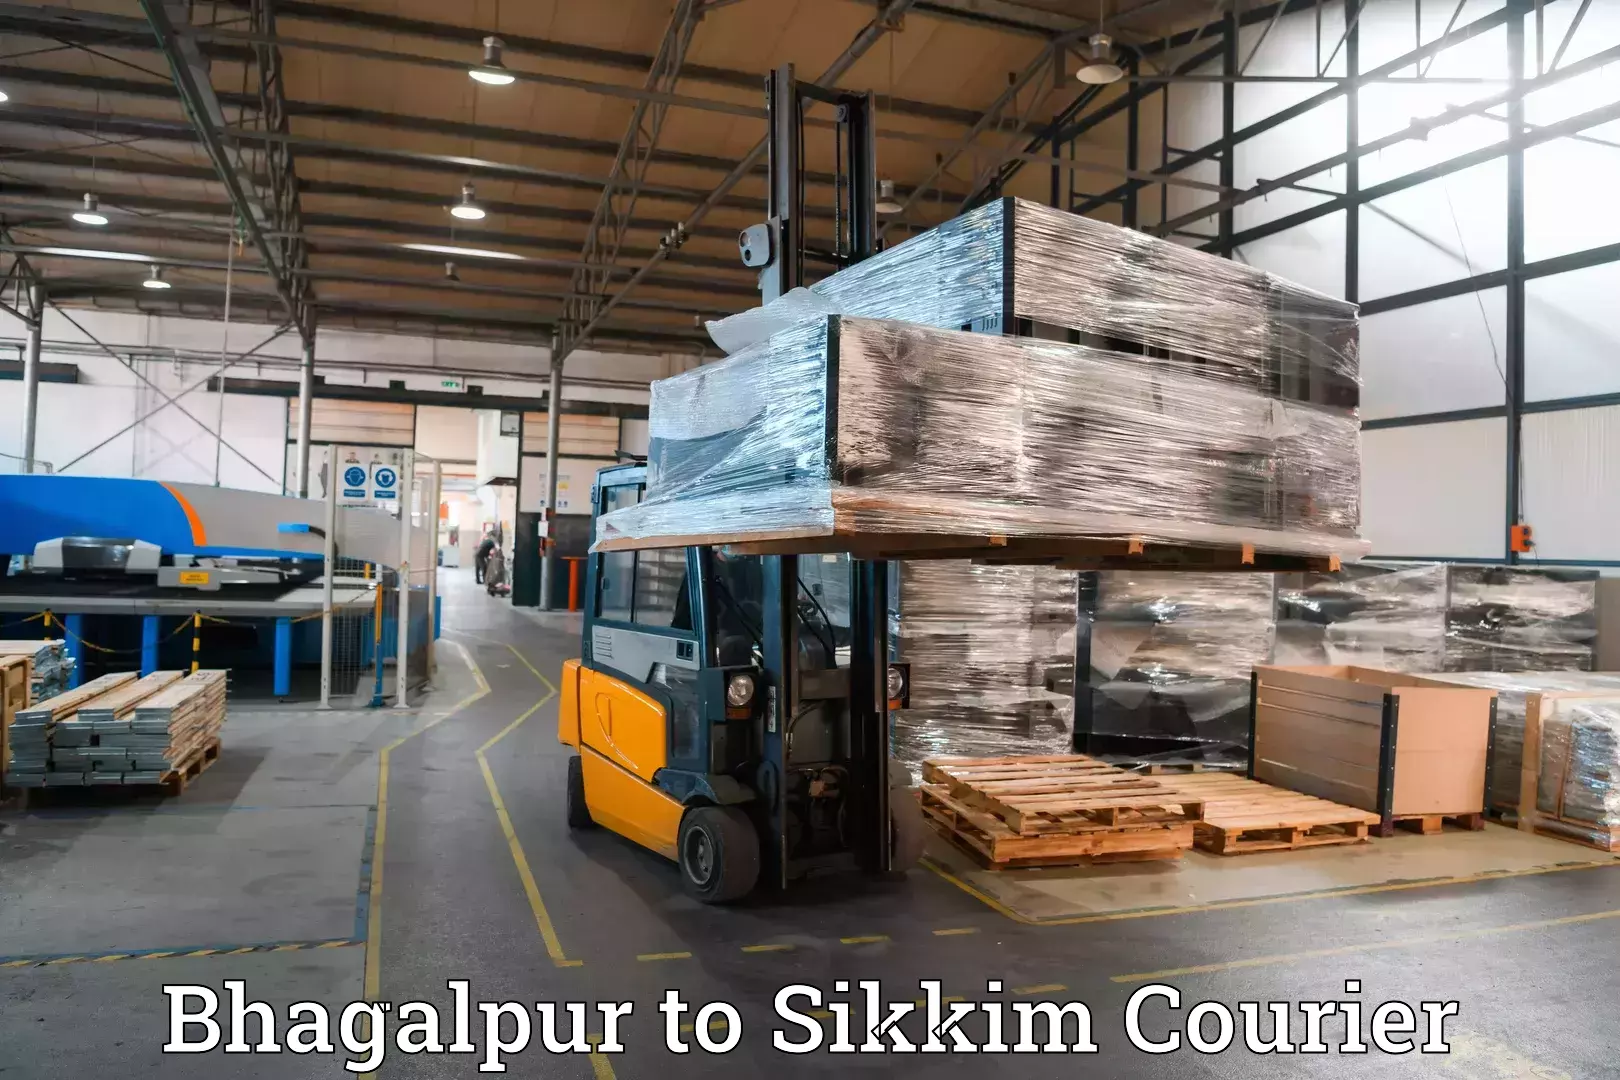 Baggage transport updates Bhagalpur to West Sikkim